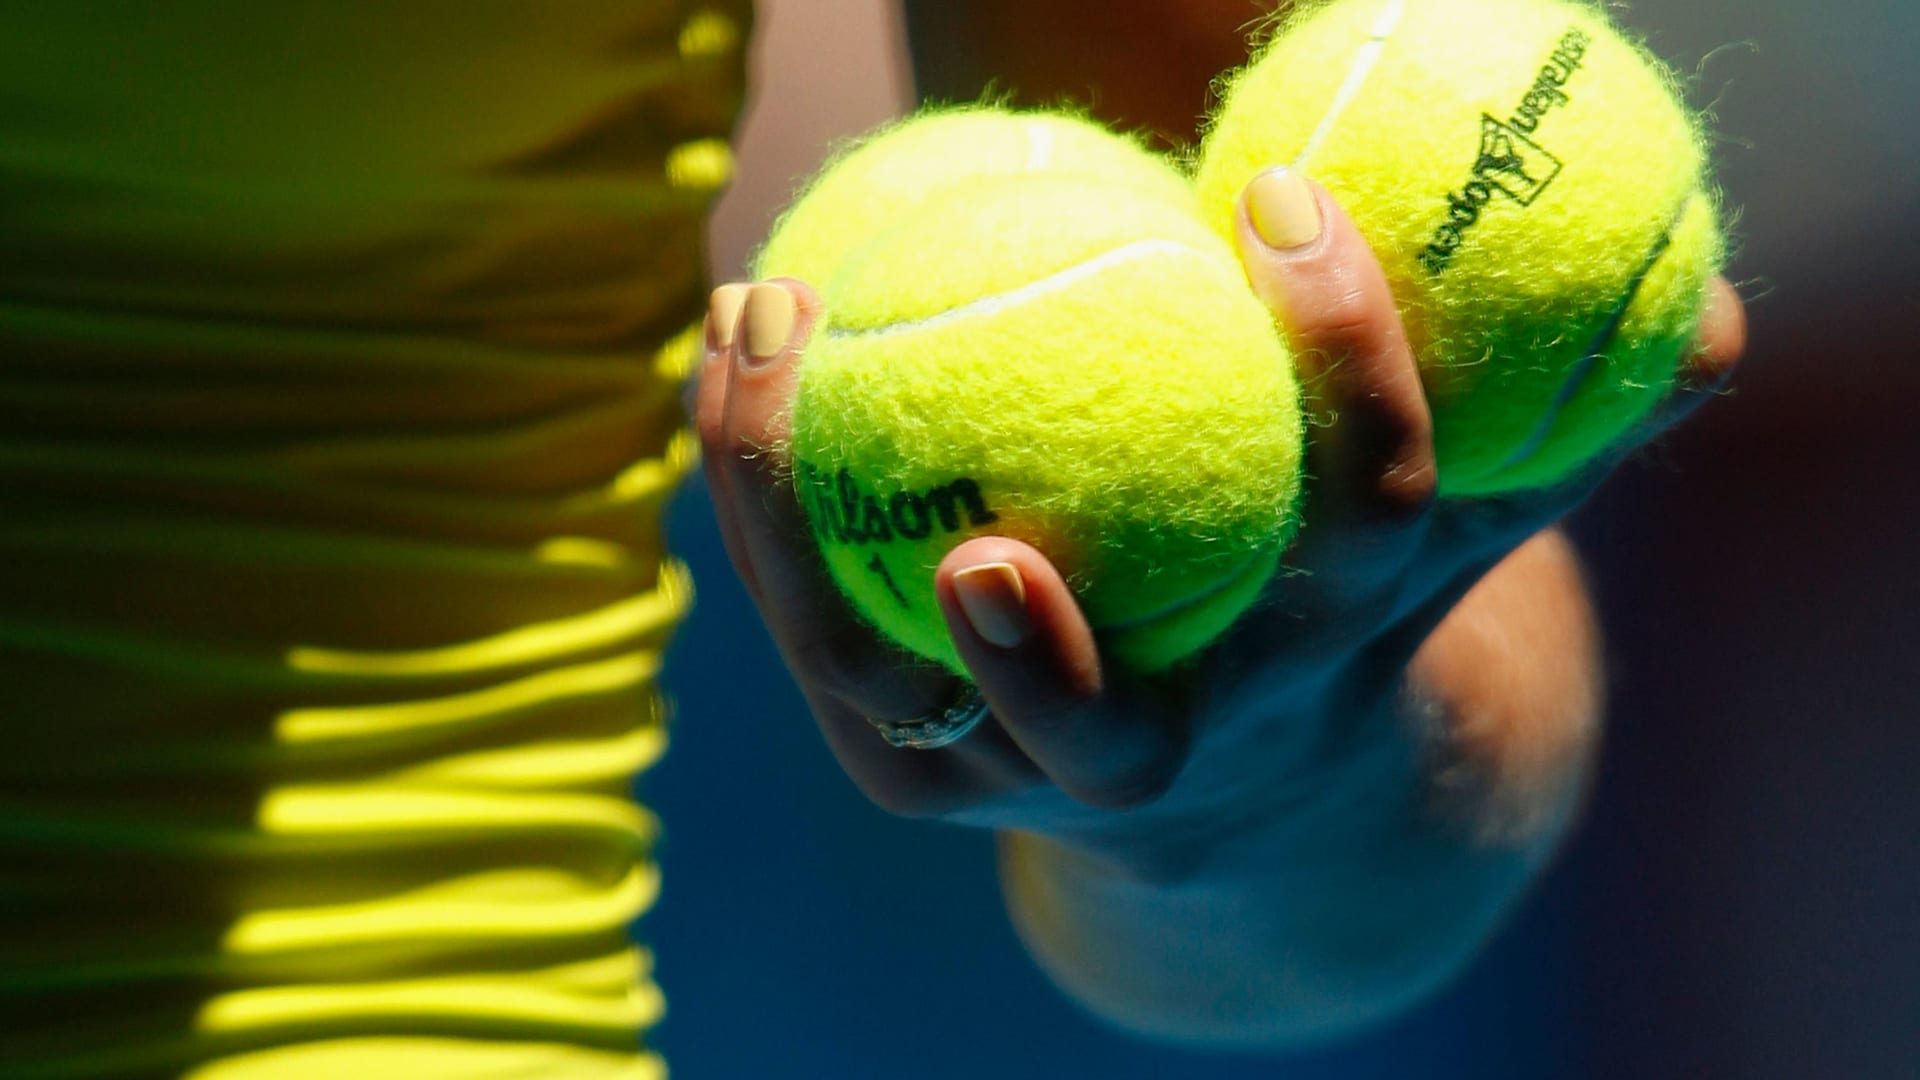 La razón por la que las pelotas de tenis son amarillas, o tal vez